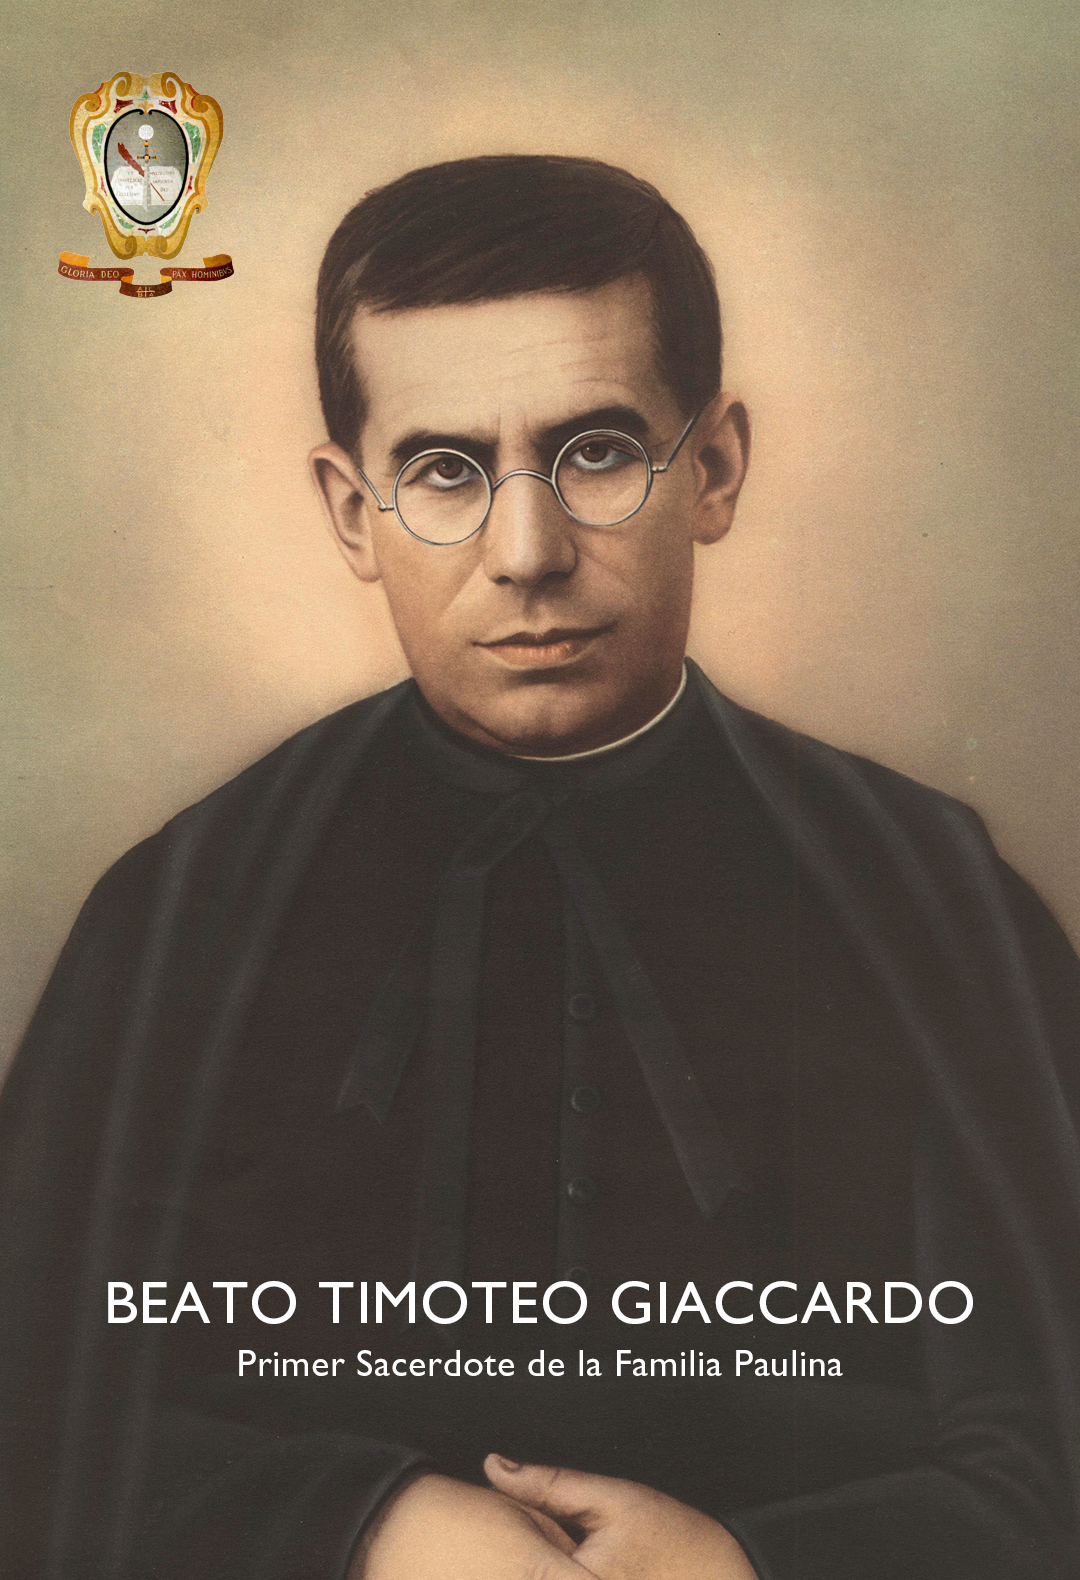 Beato Timoteo Giaccardo